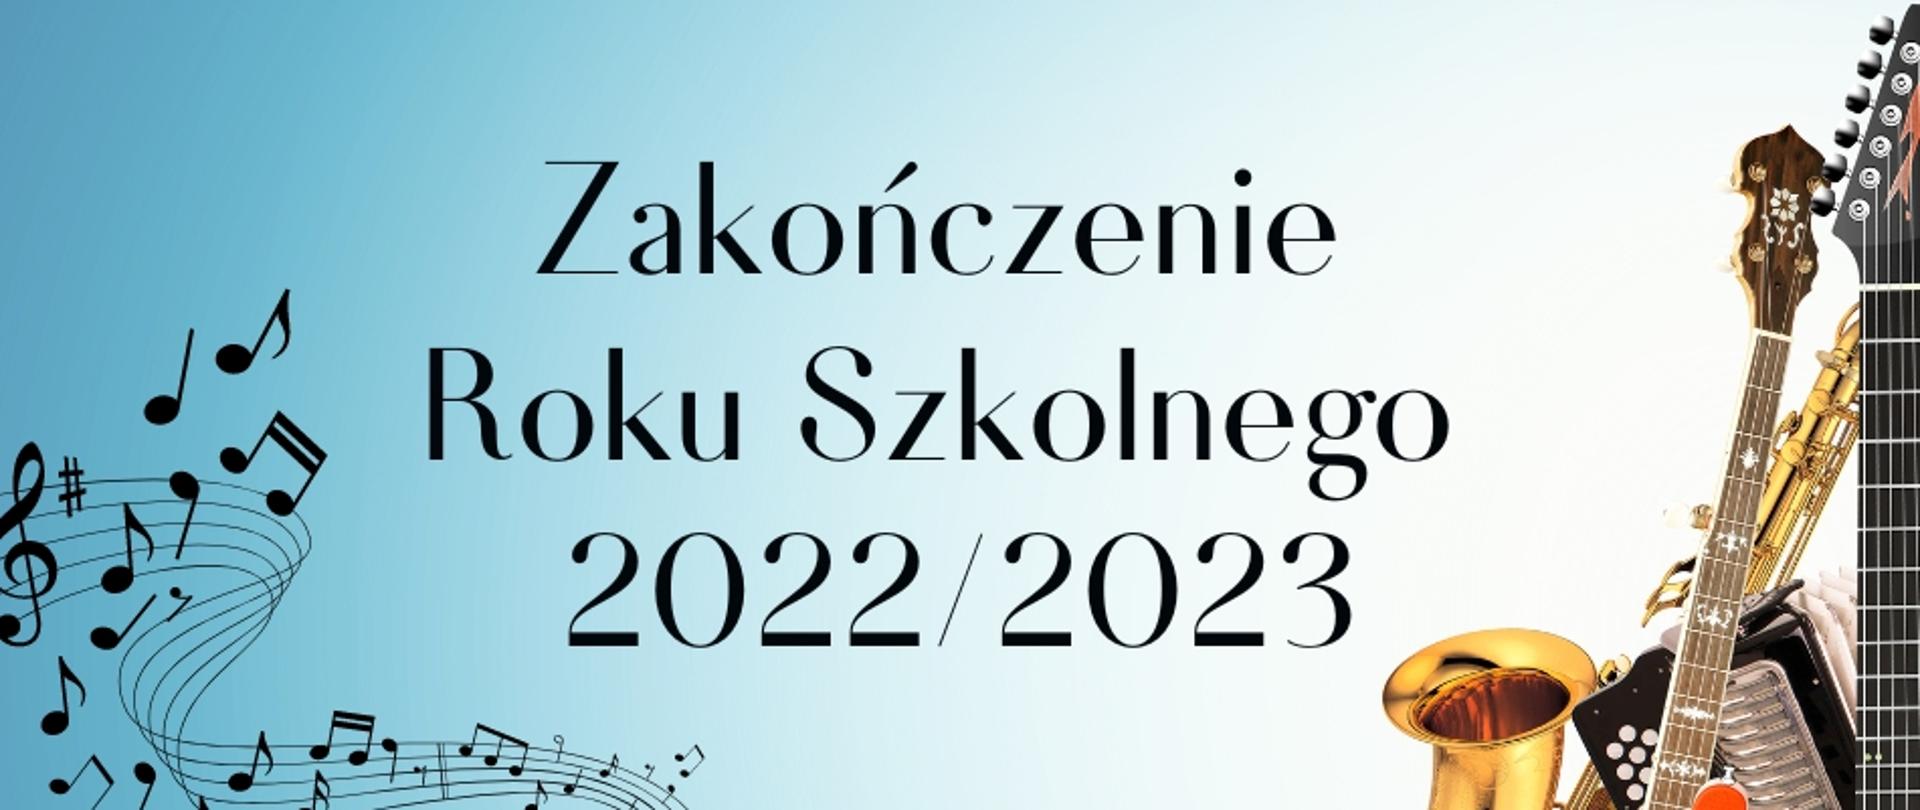 Niebieskie tło, po lewej nutki na pięciolini, Centralnie tekst w kolorze czarnym: Zakończenie roku szkolnego 2022/2023, po prawej instrumenty muzyczne; saksofon, gitara, akordeon.